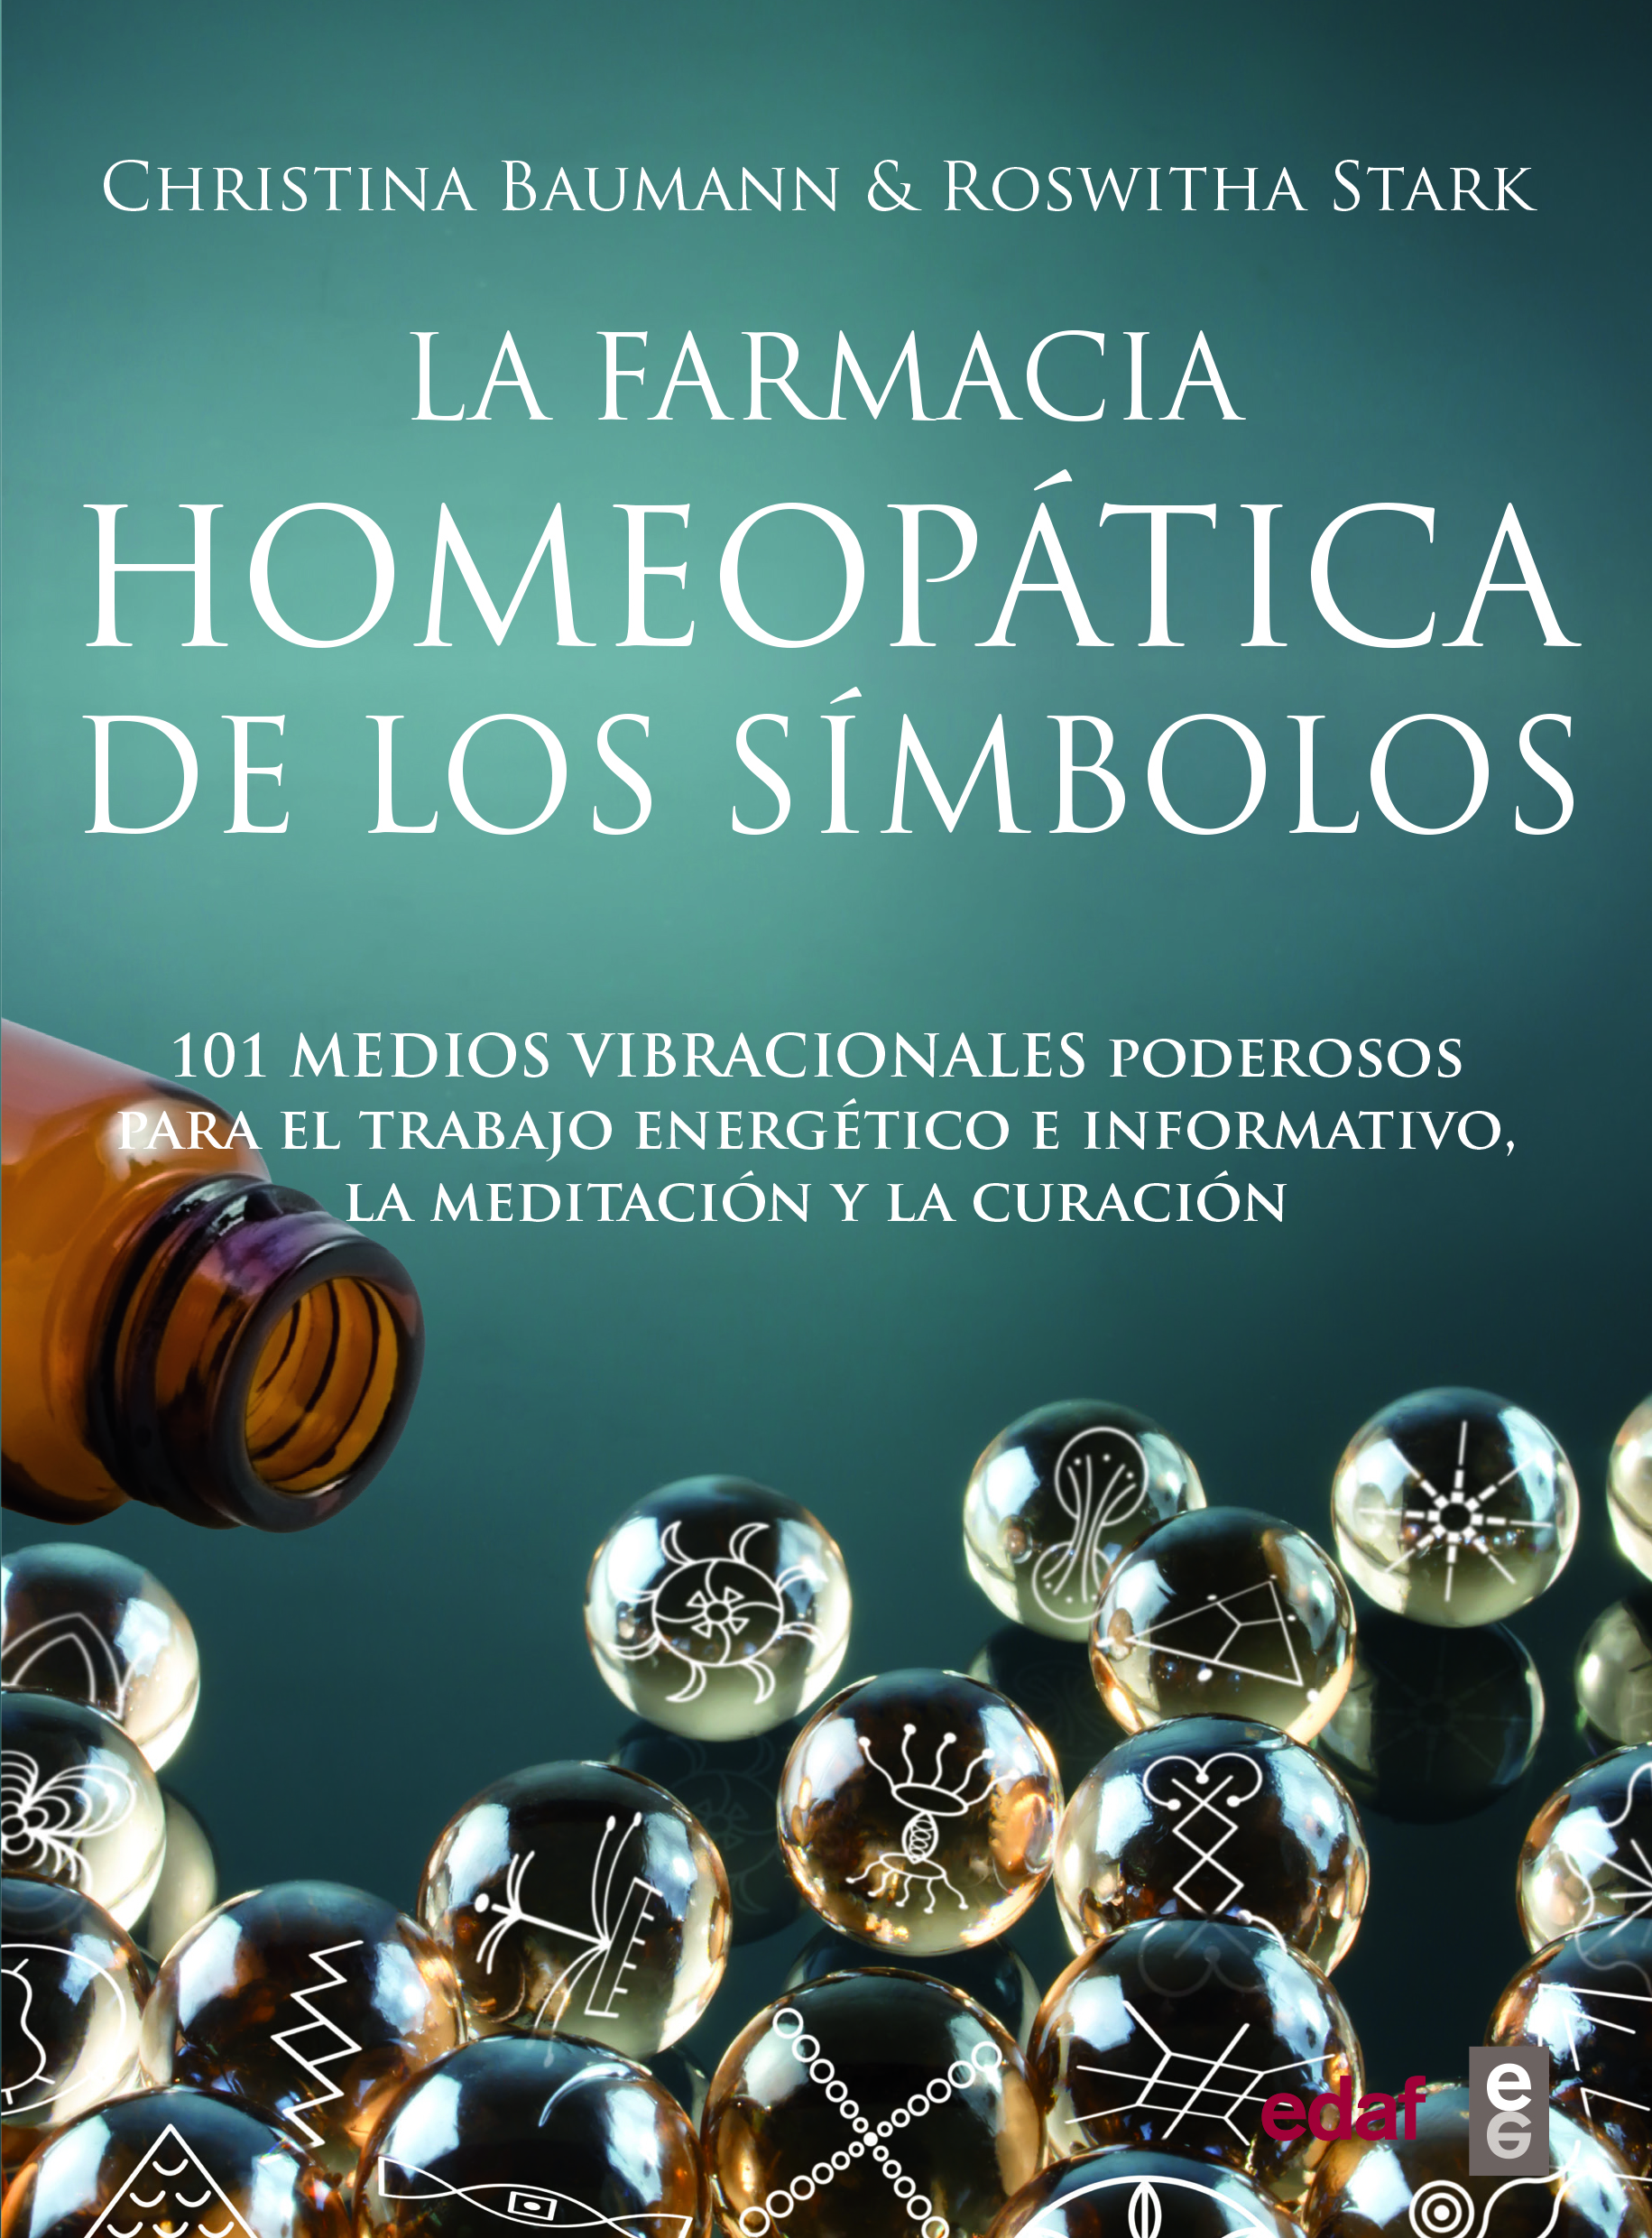 La farmacia homeopática de los símbolos «101 medios vibracionales de uso inmediato» (9788441439696)